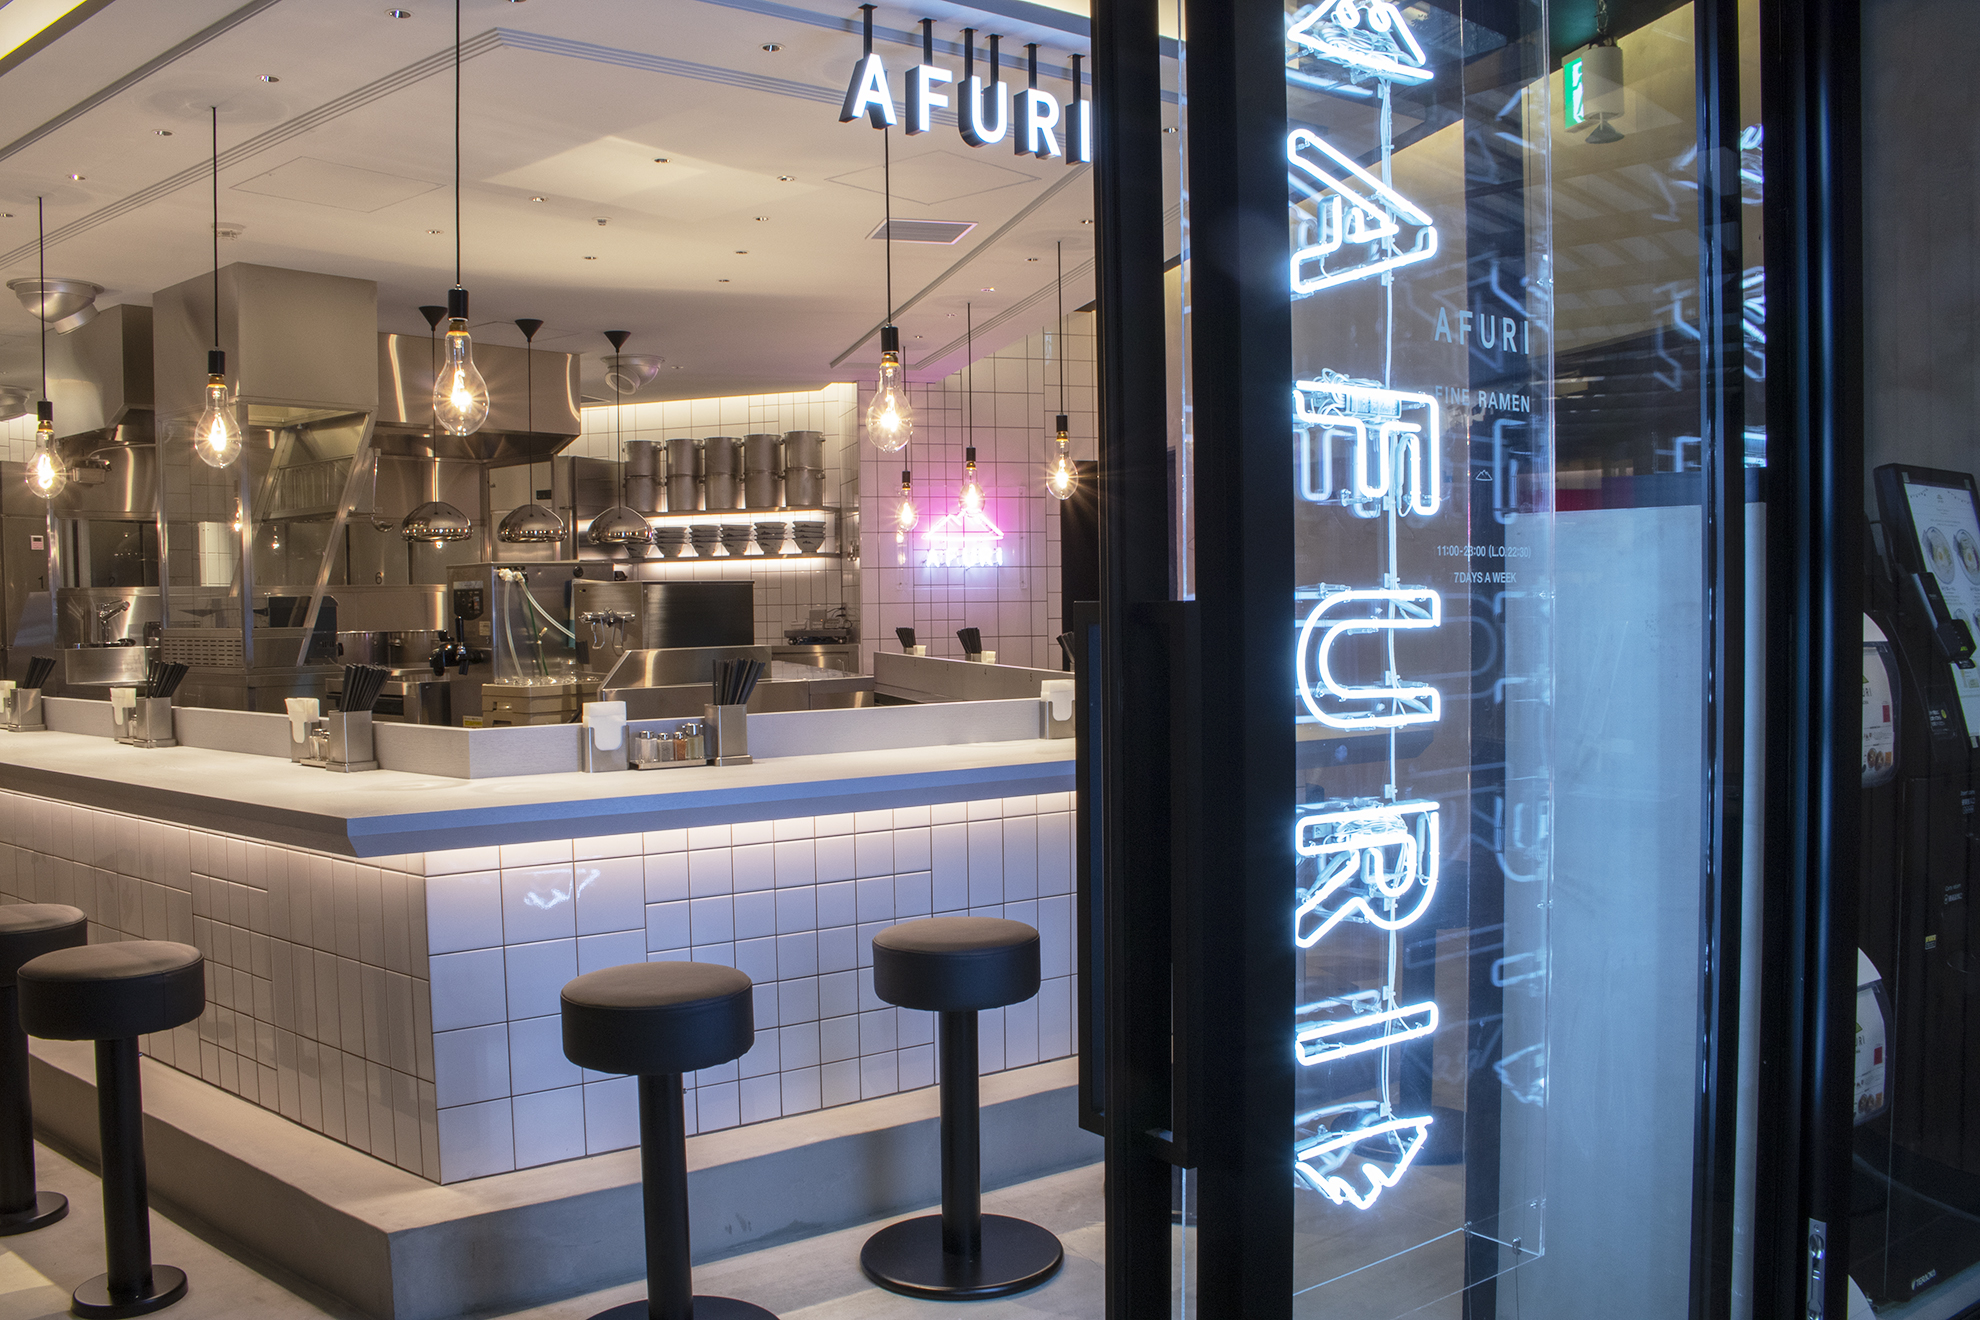 Afuri 六本木ヒルズ メトロハット ハリウッドプラザb2fに移転リニューアルオープン 新店舗はキャッシュレス決済に対応 Afuri株式会社のプレスリリース